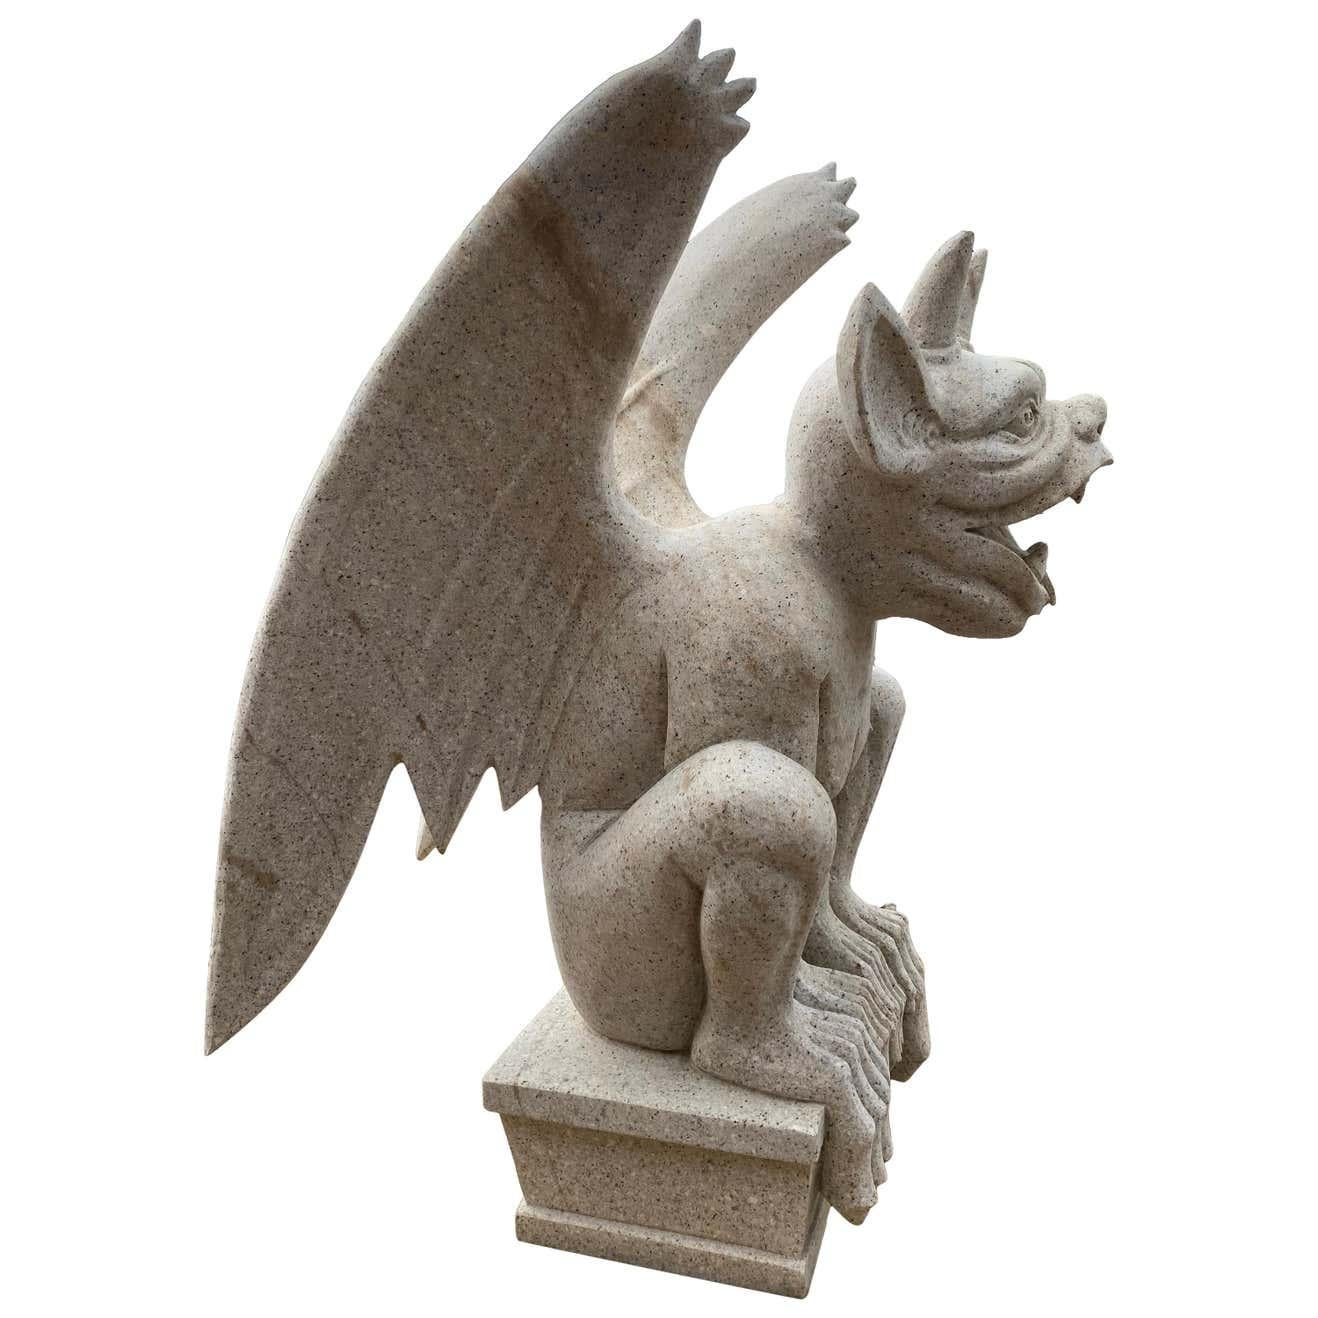 Une impressionnante Gargouille en granit du 20ème siècle, sculptée à la main. Très dans le style gothique. Fantastique comme sculpture décorative ou comme installation permanente dans un bâtiment.